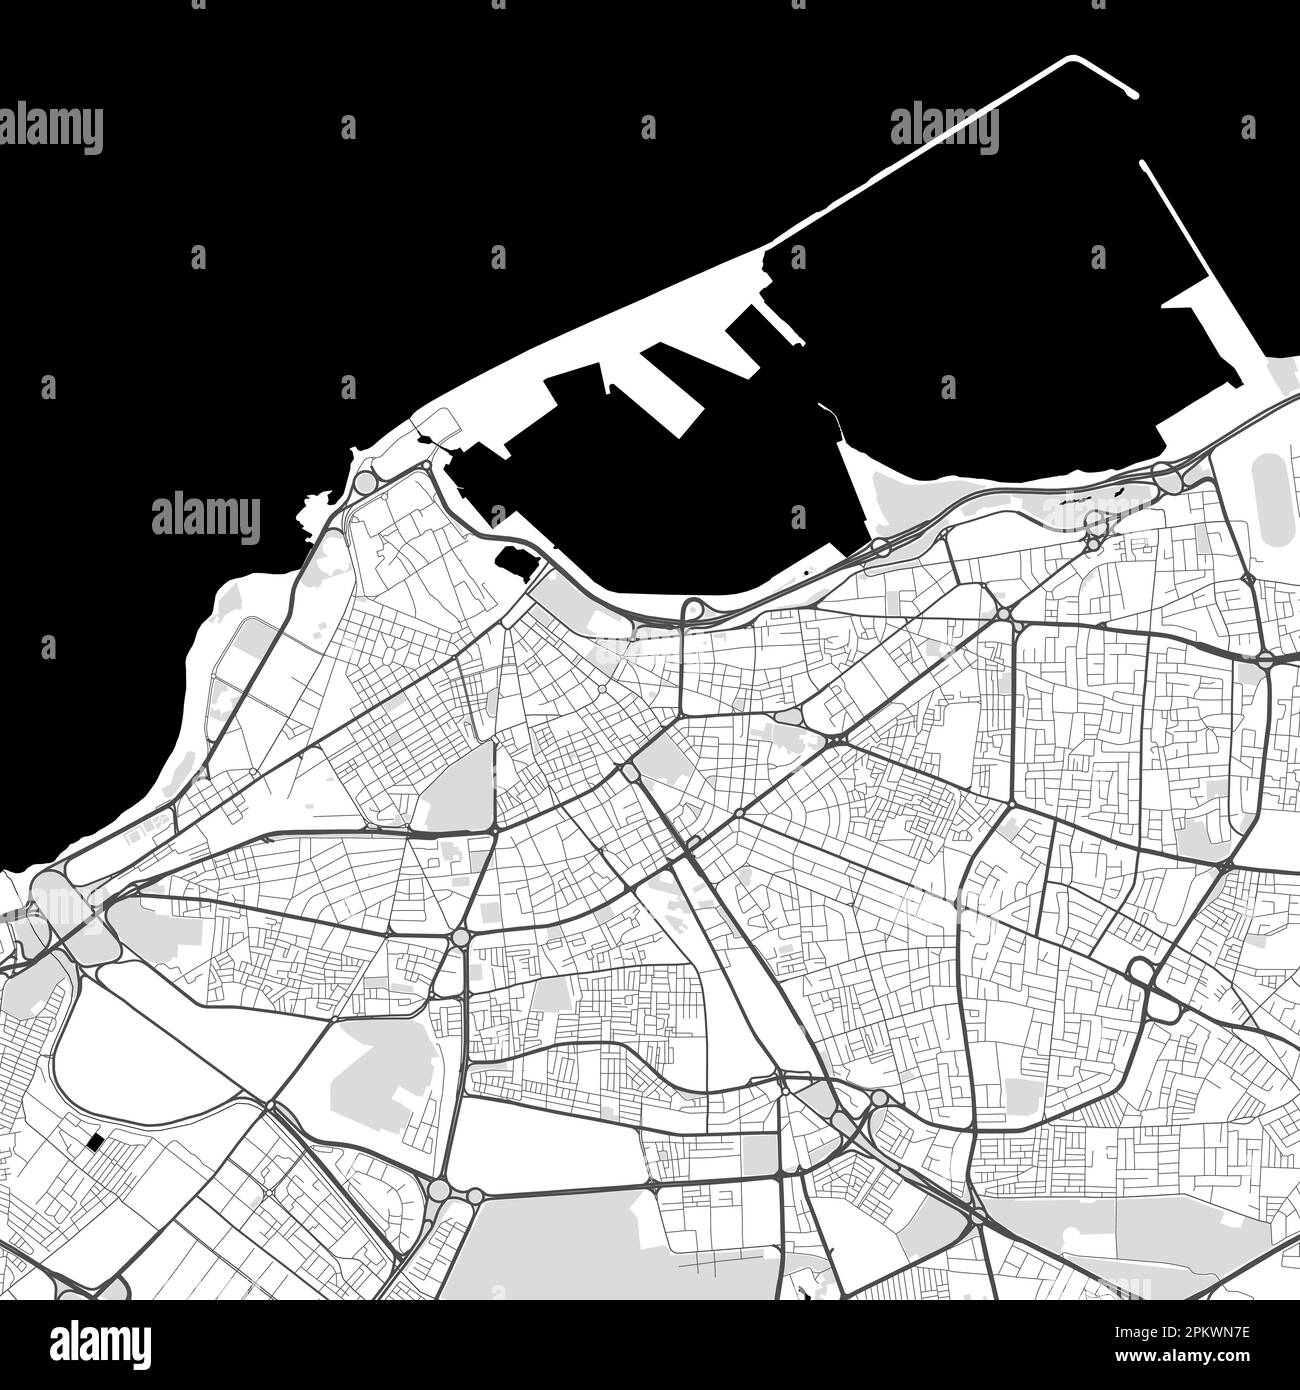 Carte vectorielle de la ville urbaine de Tripoli. Illustration vectorielle, poster d'art noir et blanc sur la carte de Tripoli en niveaux de gris. carte routière avec routes, ville métropolitaine Illustration de Vecteur